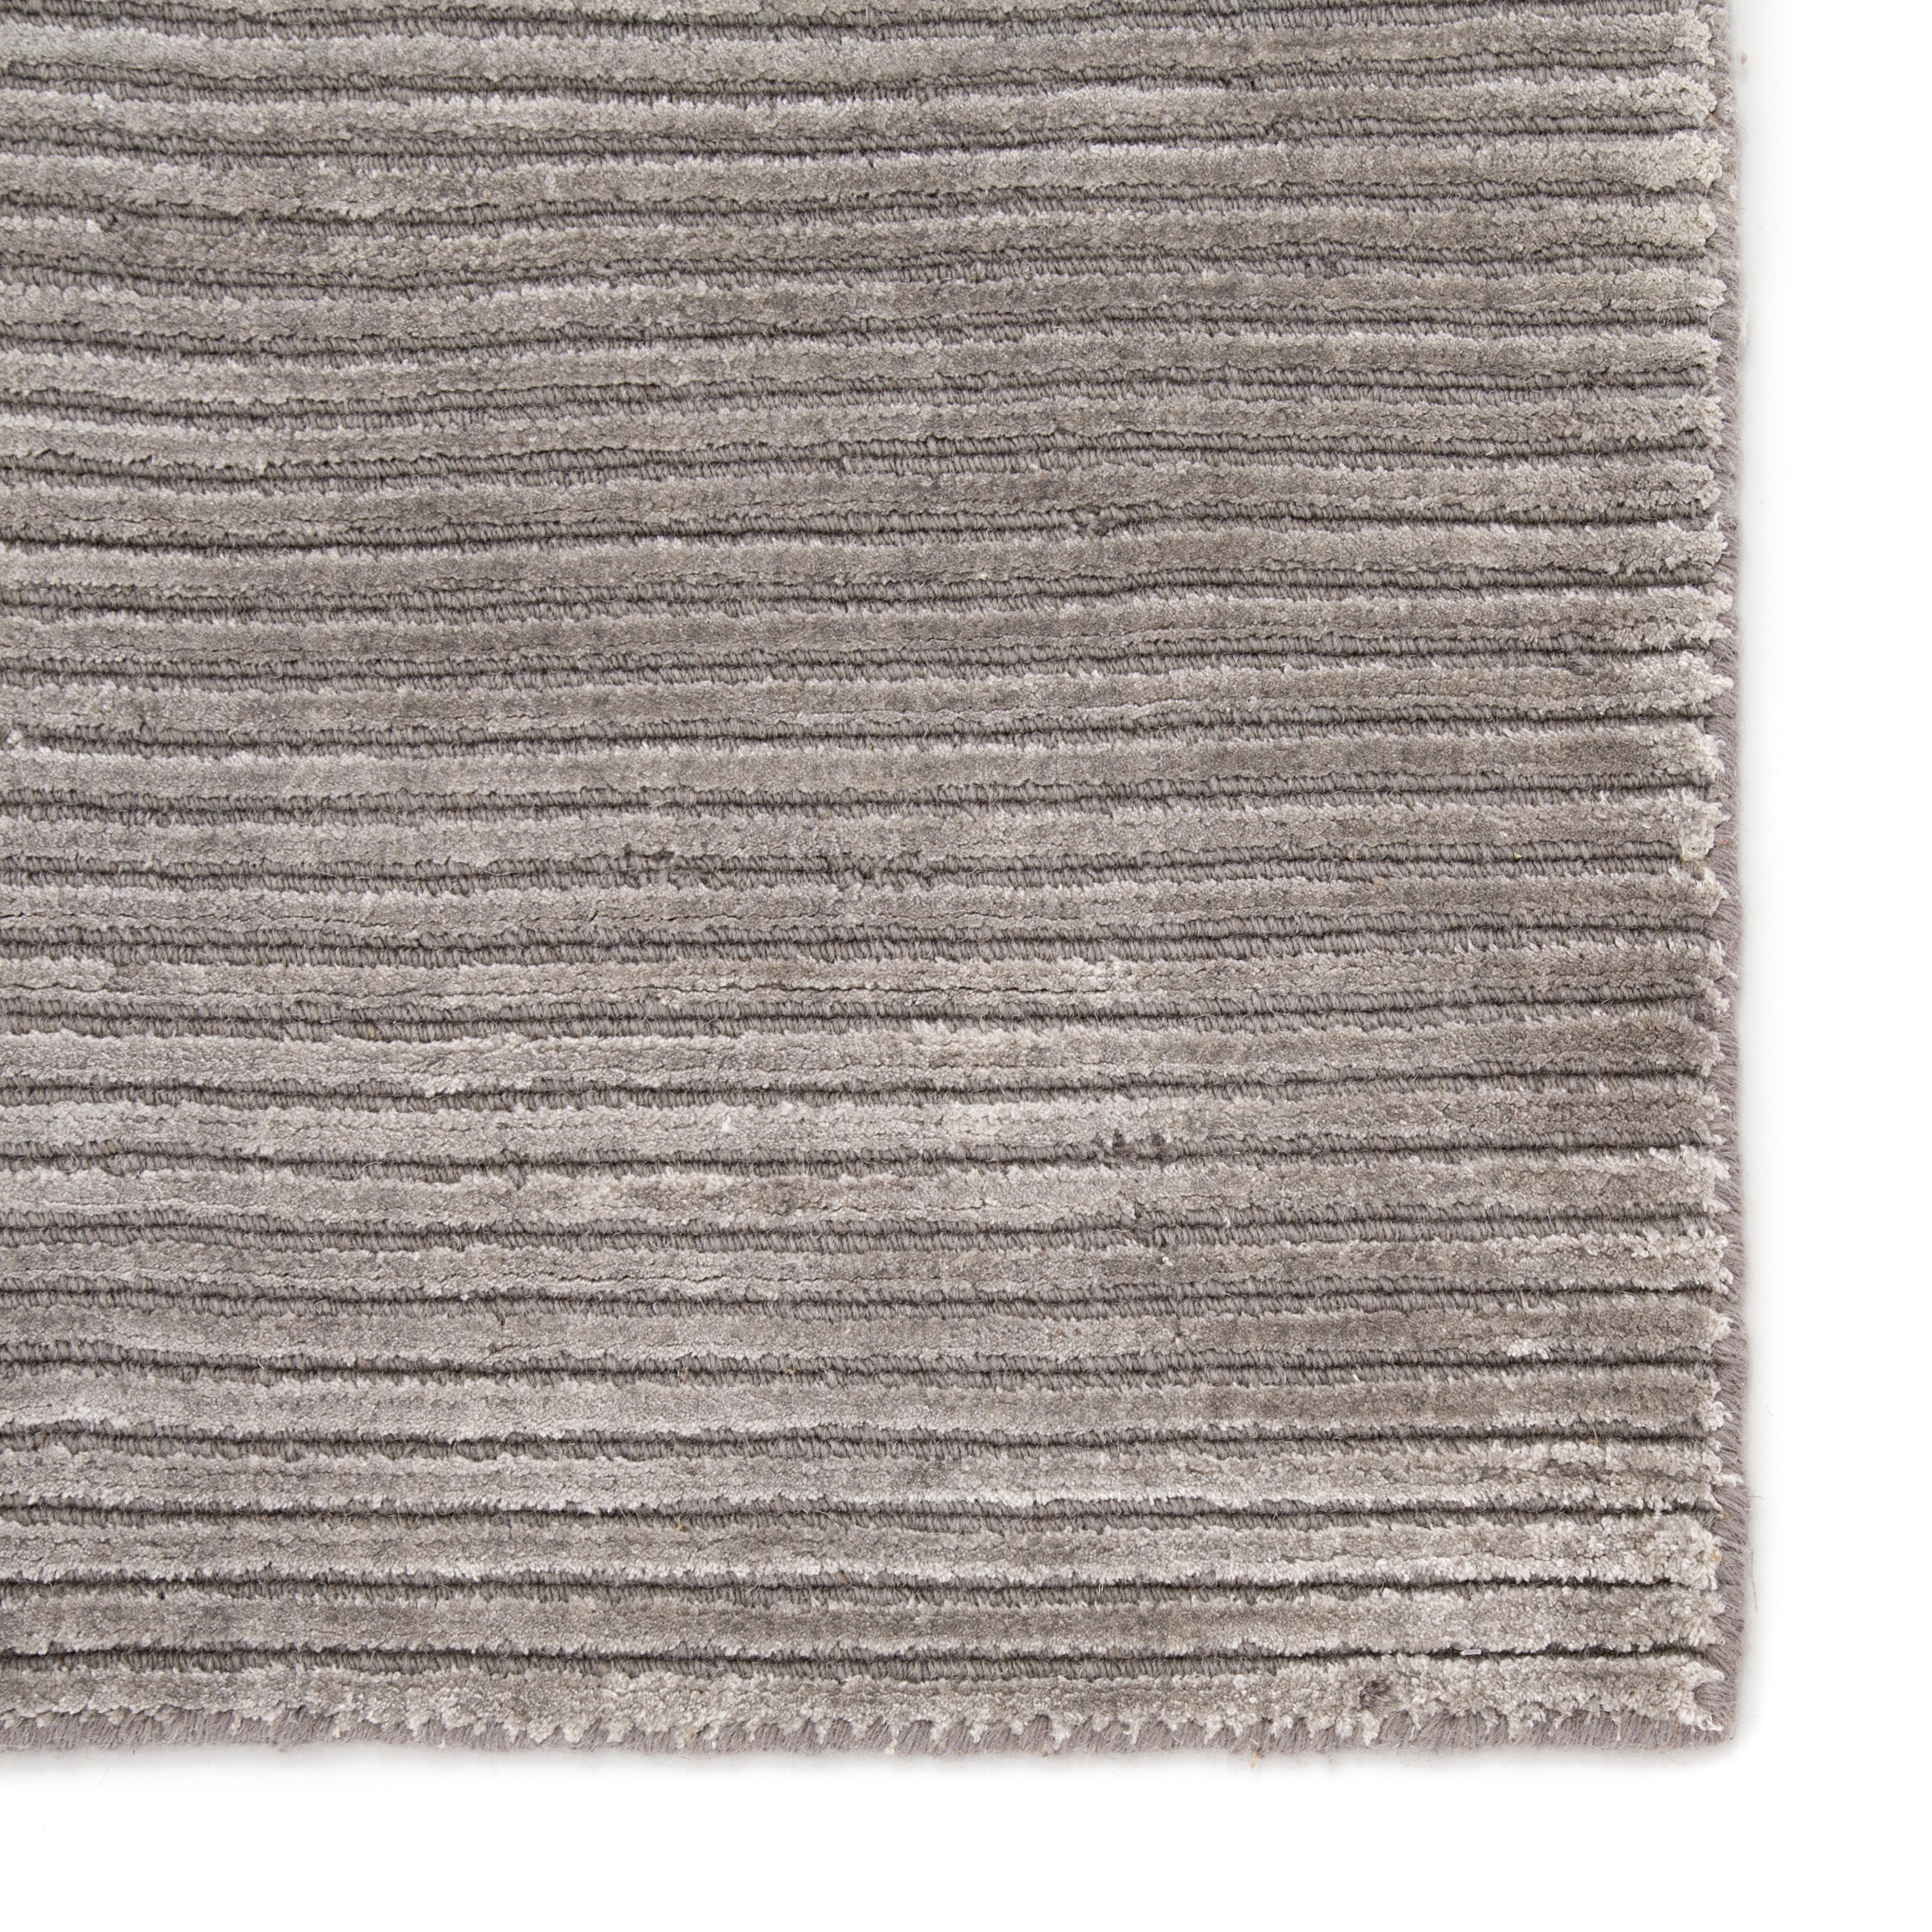 Basis Handmade Solid Gray/ Silver Area Rug (10' X 14') - Image 3